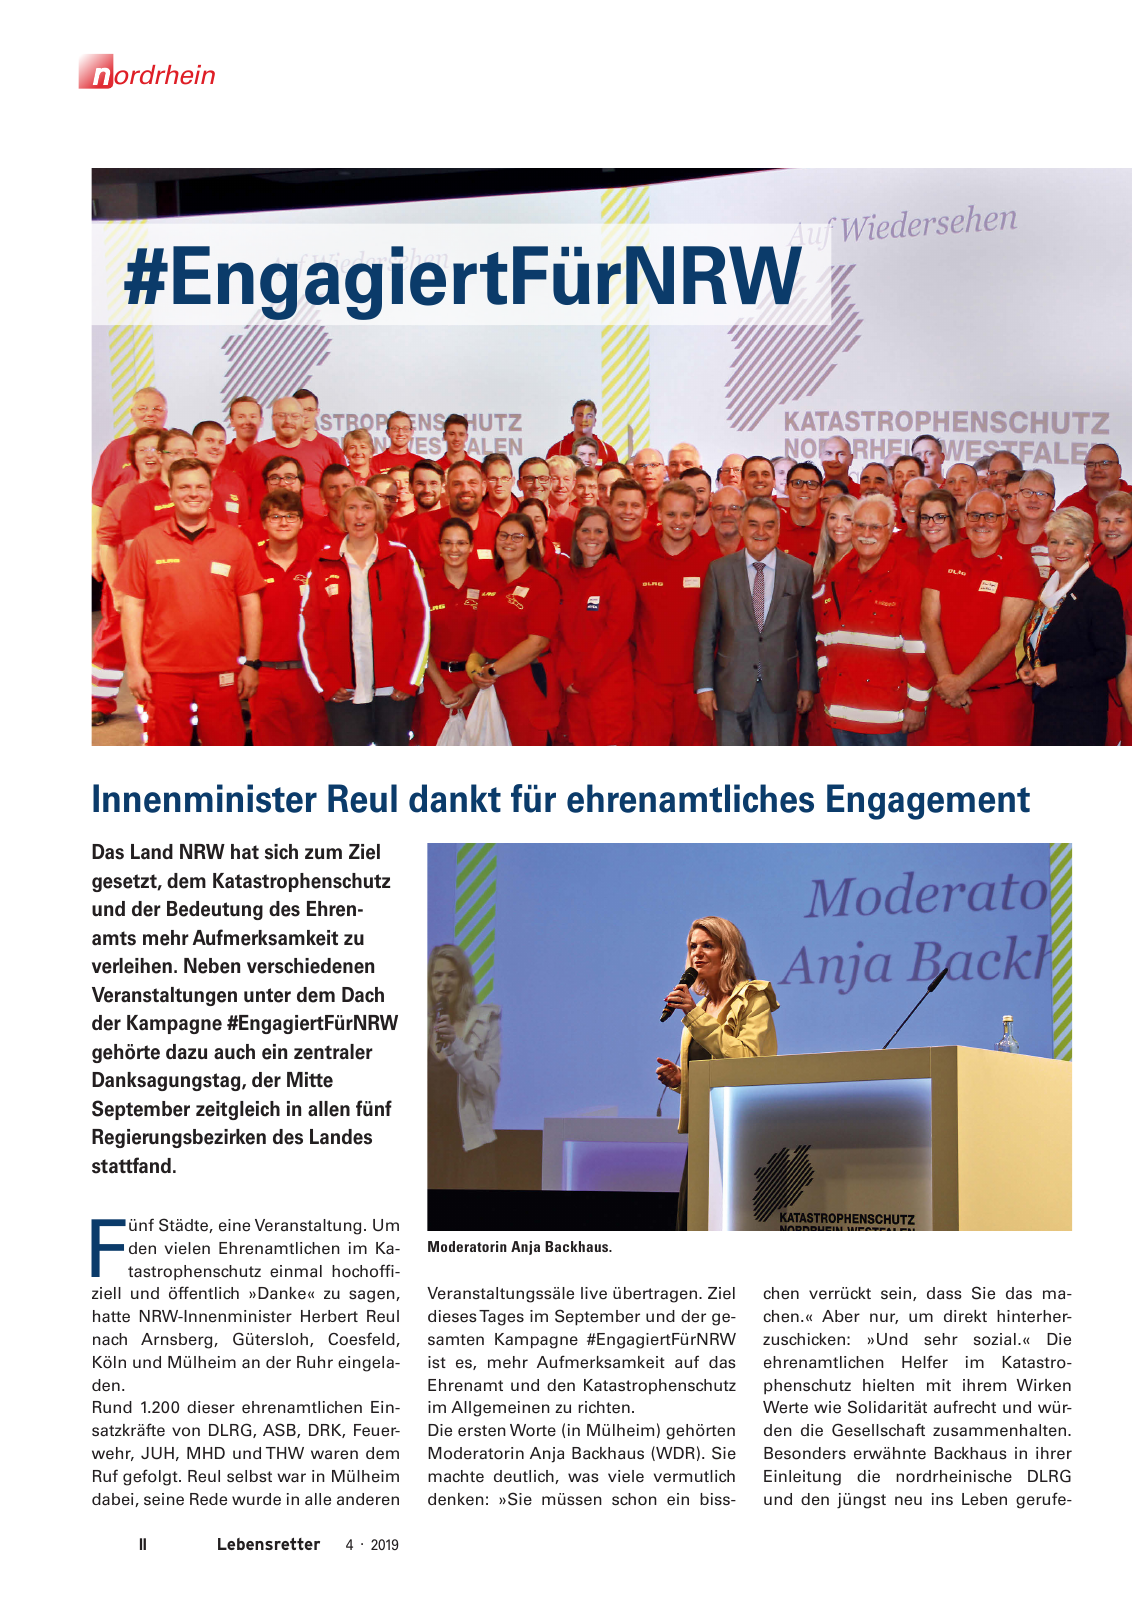 Vorschau Lebensretter 4/2019 -  Nordrhein Regionalausgabe Seite 4